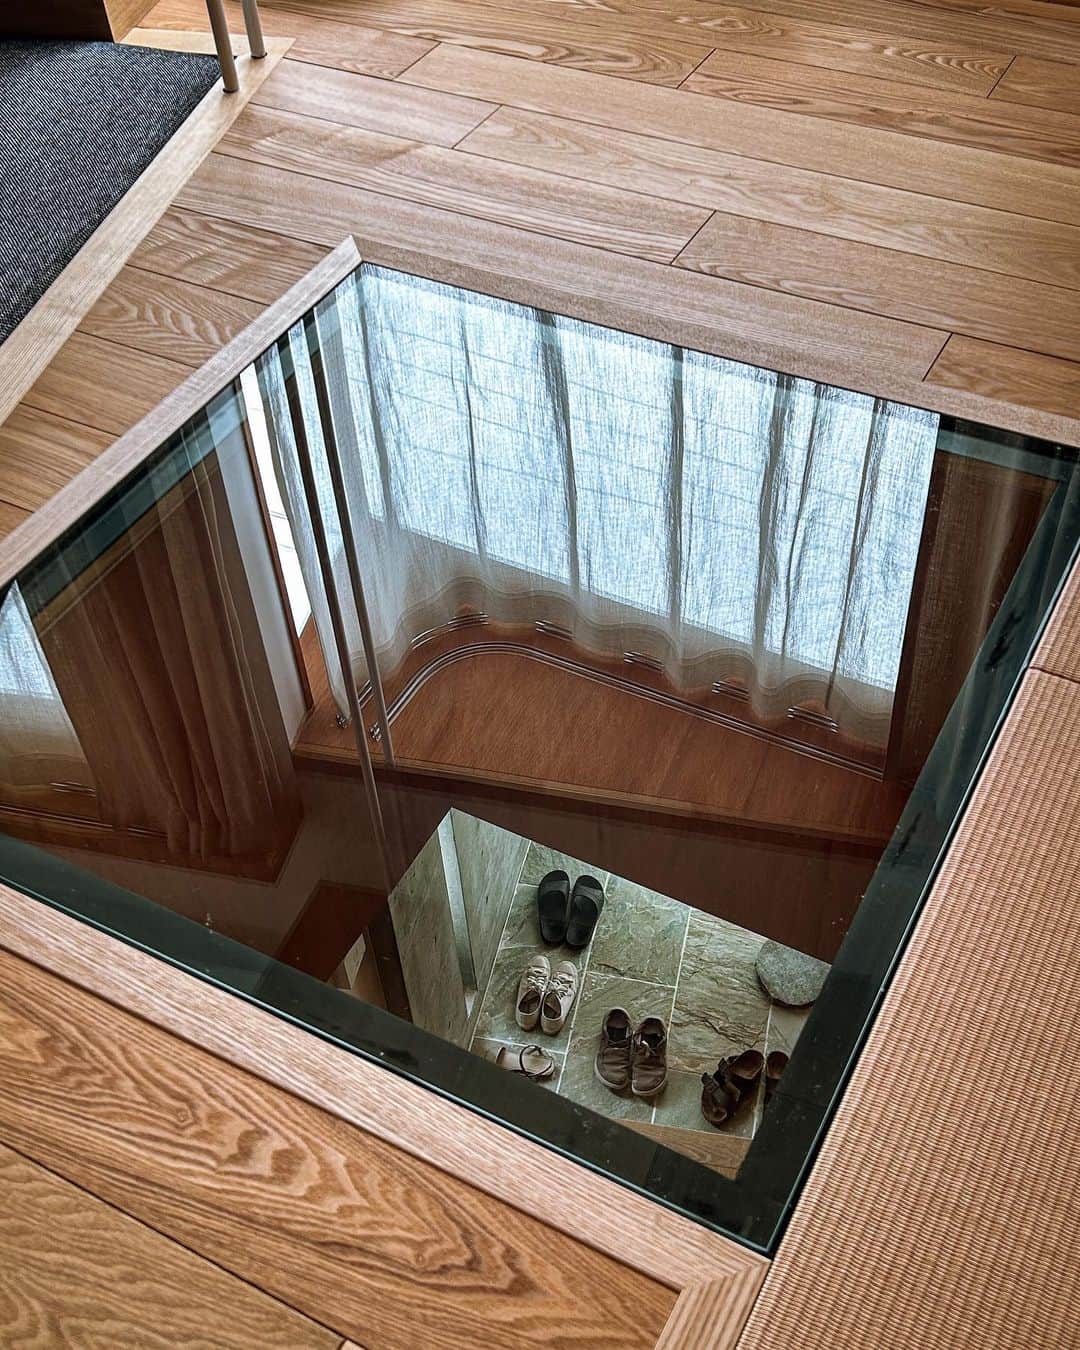 一級建築士事務所hausのインスタグラム：「神戸市須磨区re.haus-sy 引越後の片付けも進みようやく部屋らしくなって来ました♪ 先日から貼っていただいていた玄関haus石タイル面は2Fリビング小上がりのガラス床から確認出来ます♪  RoomClipも見てね♪ ユーザー名:hausuma  このrehaus-syは私の自宅兼アトリエになります。 完成した暁には事務所はココの一階に移転となり、ショールームとしてオープンなスペースにしたいと思っています♪  □re.haus-sy□ 兵庫県神戸市須磨区 #rehaus_sy  #建築 #建築家 #家づくり #玄関 #工事 #リノベーション #リフォーム #須磨 #須磨浦公園 #インテリアデザイン #神戸 #設計事務所 #リビング #畳 #タモ #引越し #アトリエ #事務所移転 #renovation #reform #entrance #livingroom #suma #kobe #instahome #instahouse #roomclip #一級建築士事務所haus」